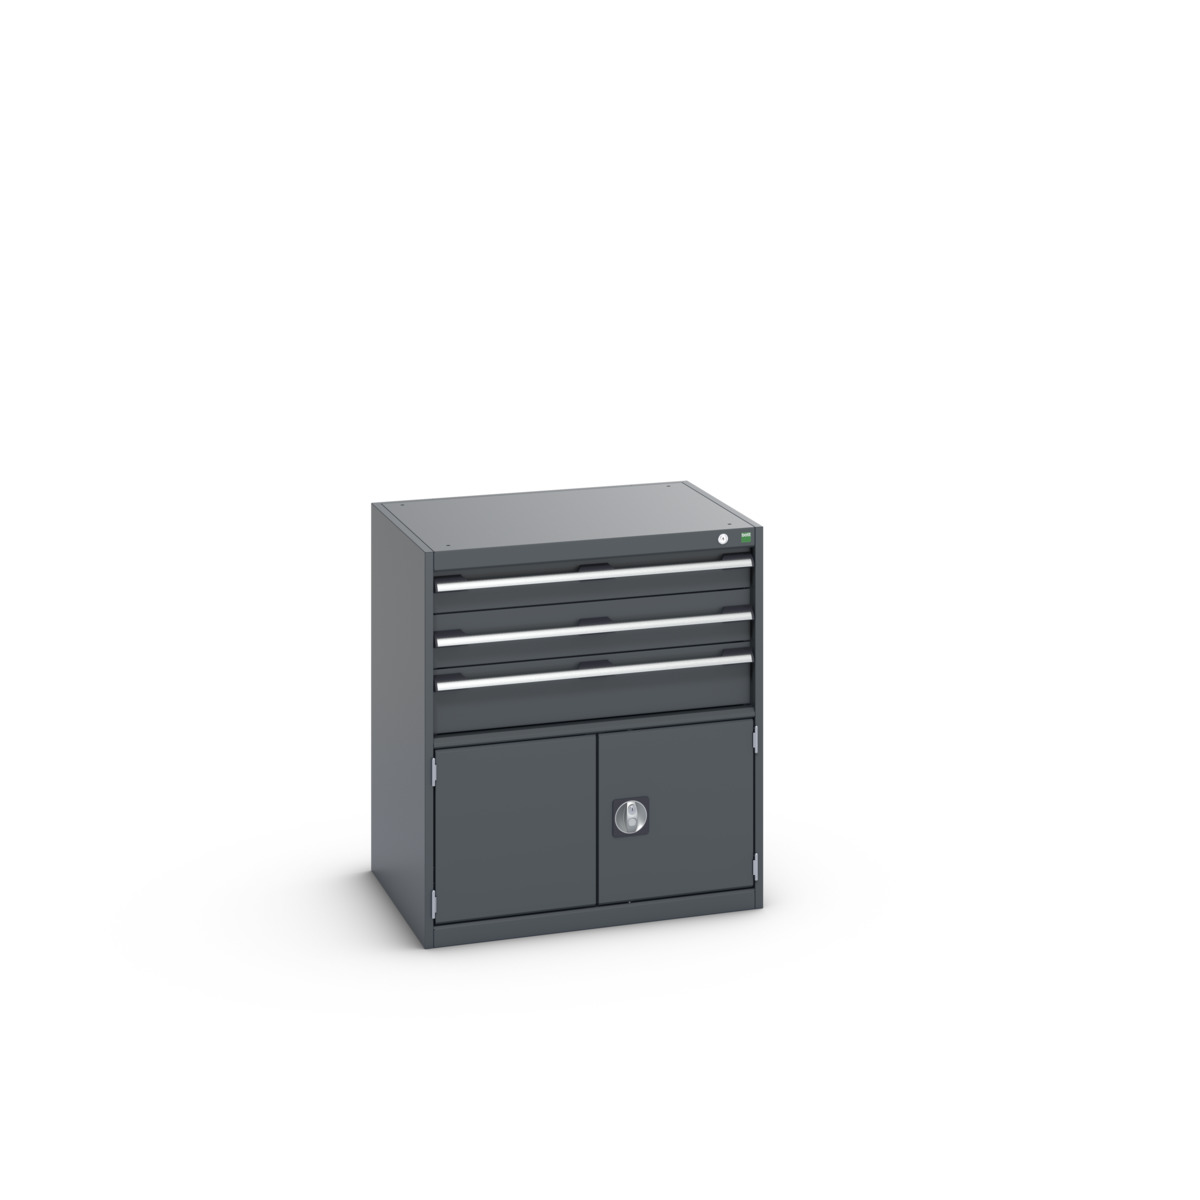 40020033.77V - cubio drawer-door cabinet